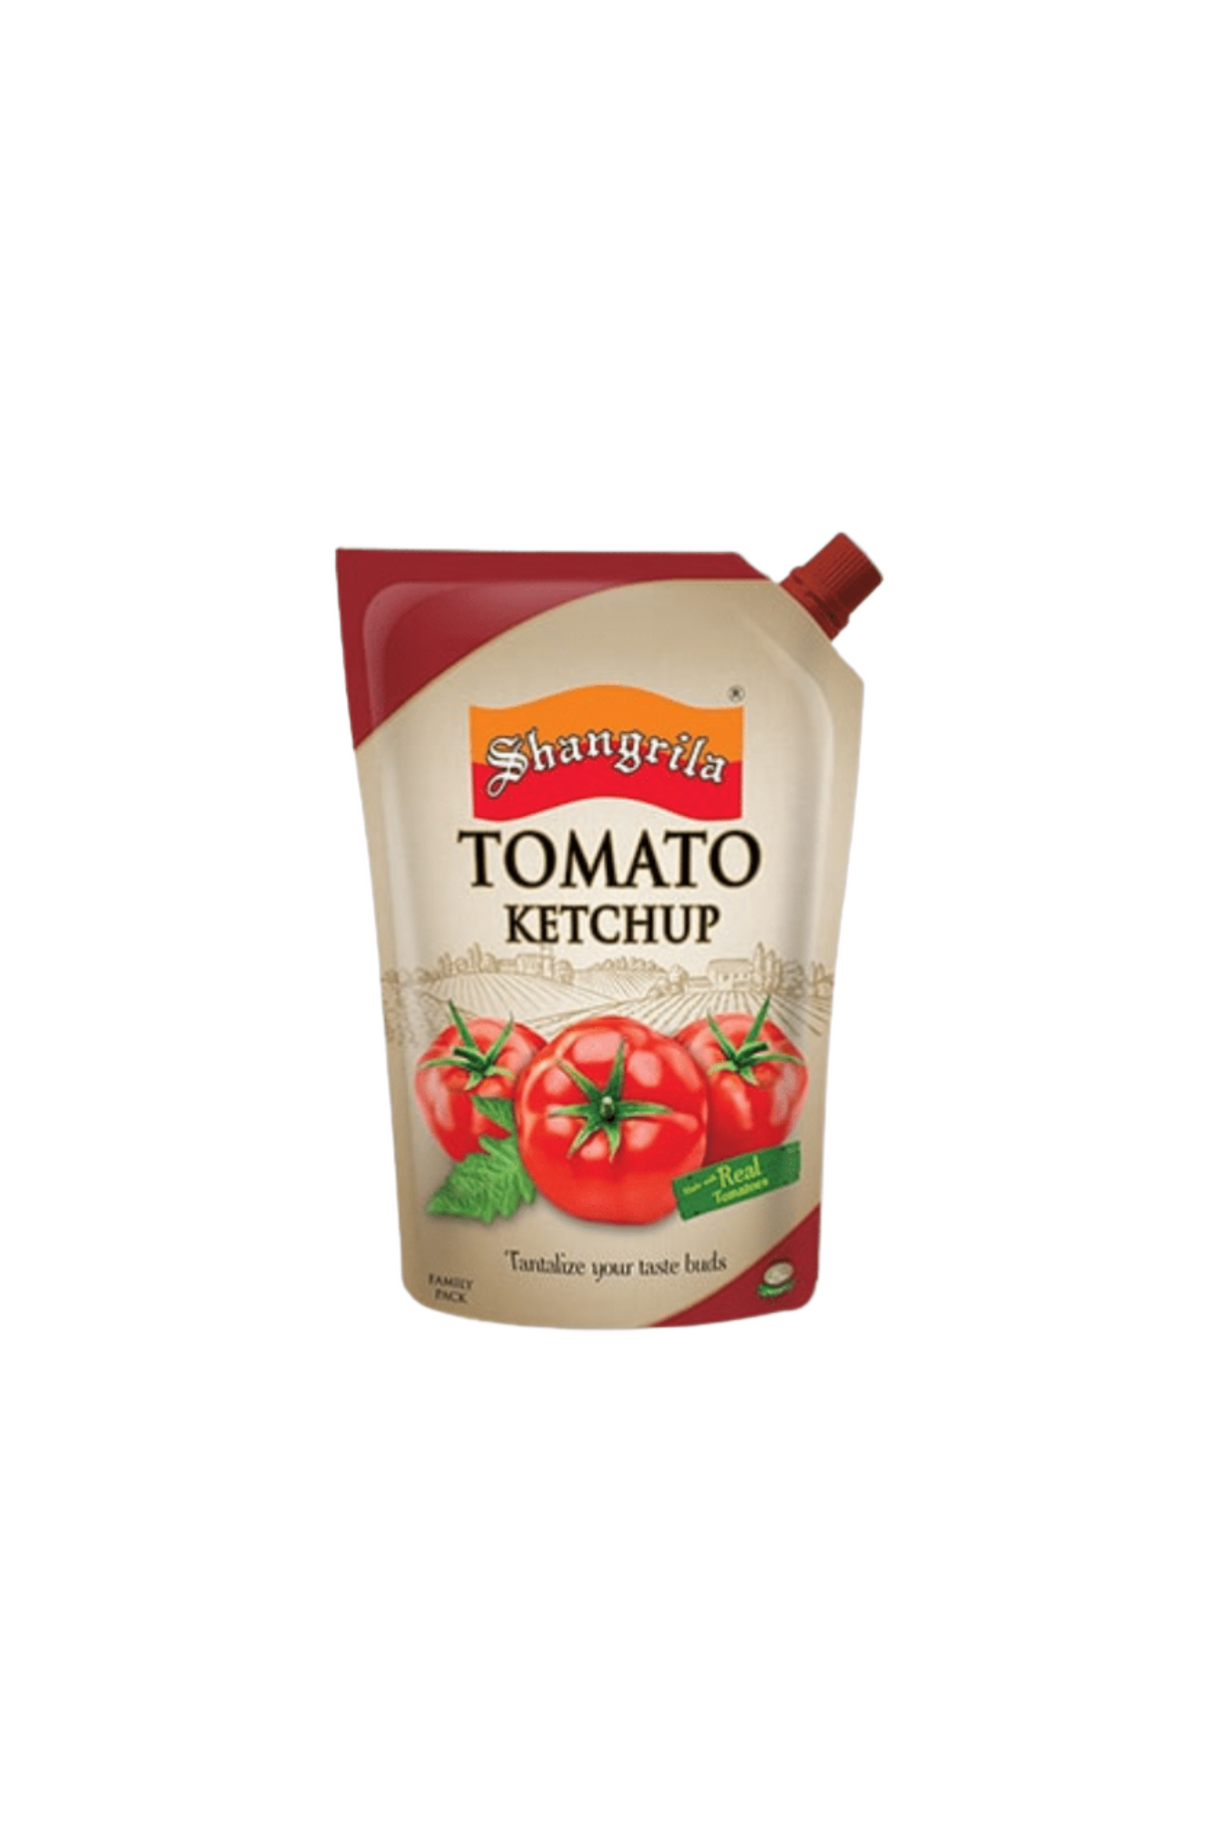 shangrila ketchup tomato 800g